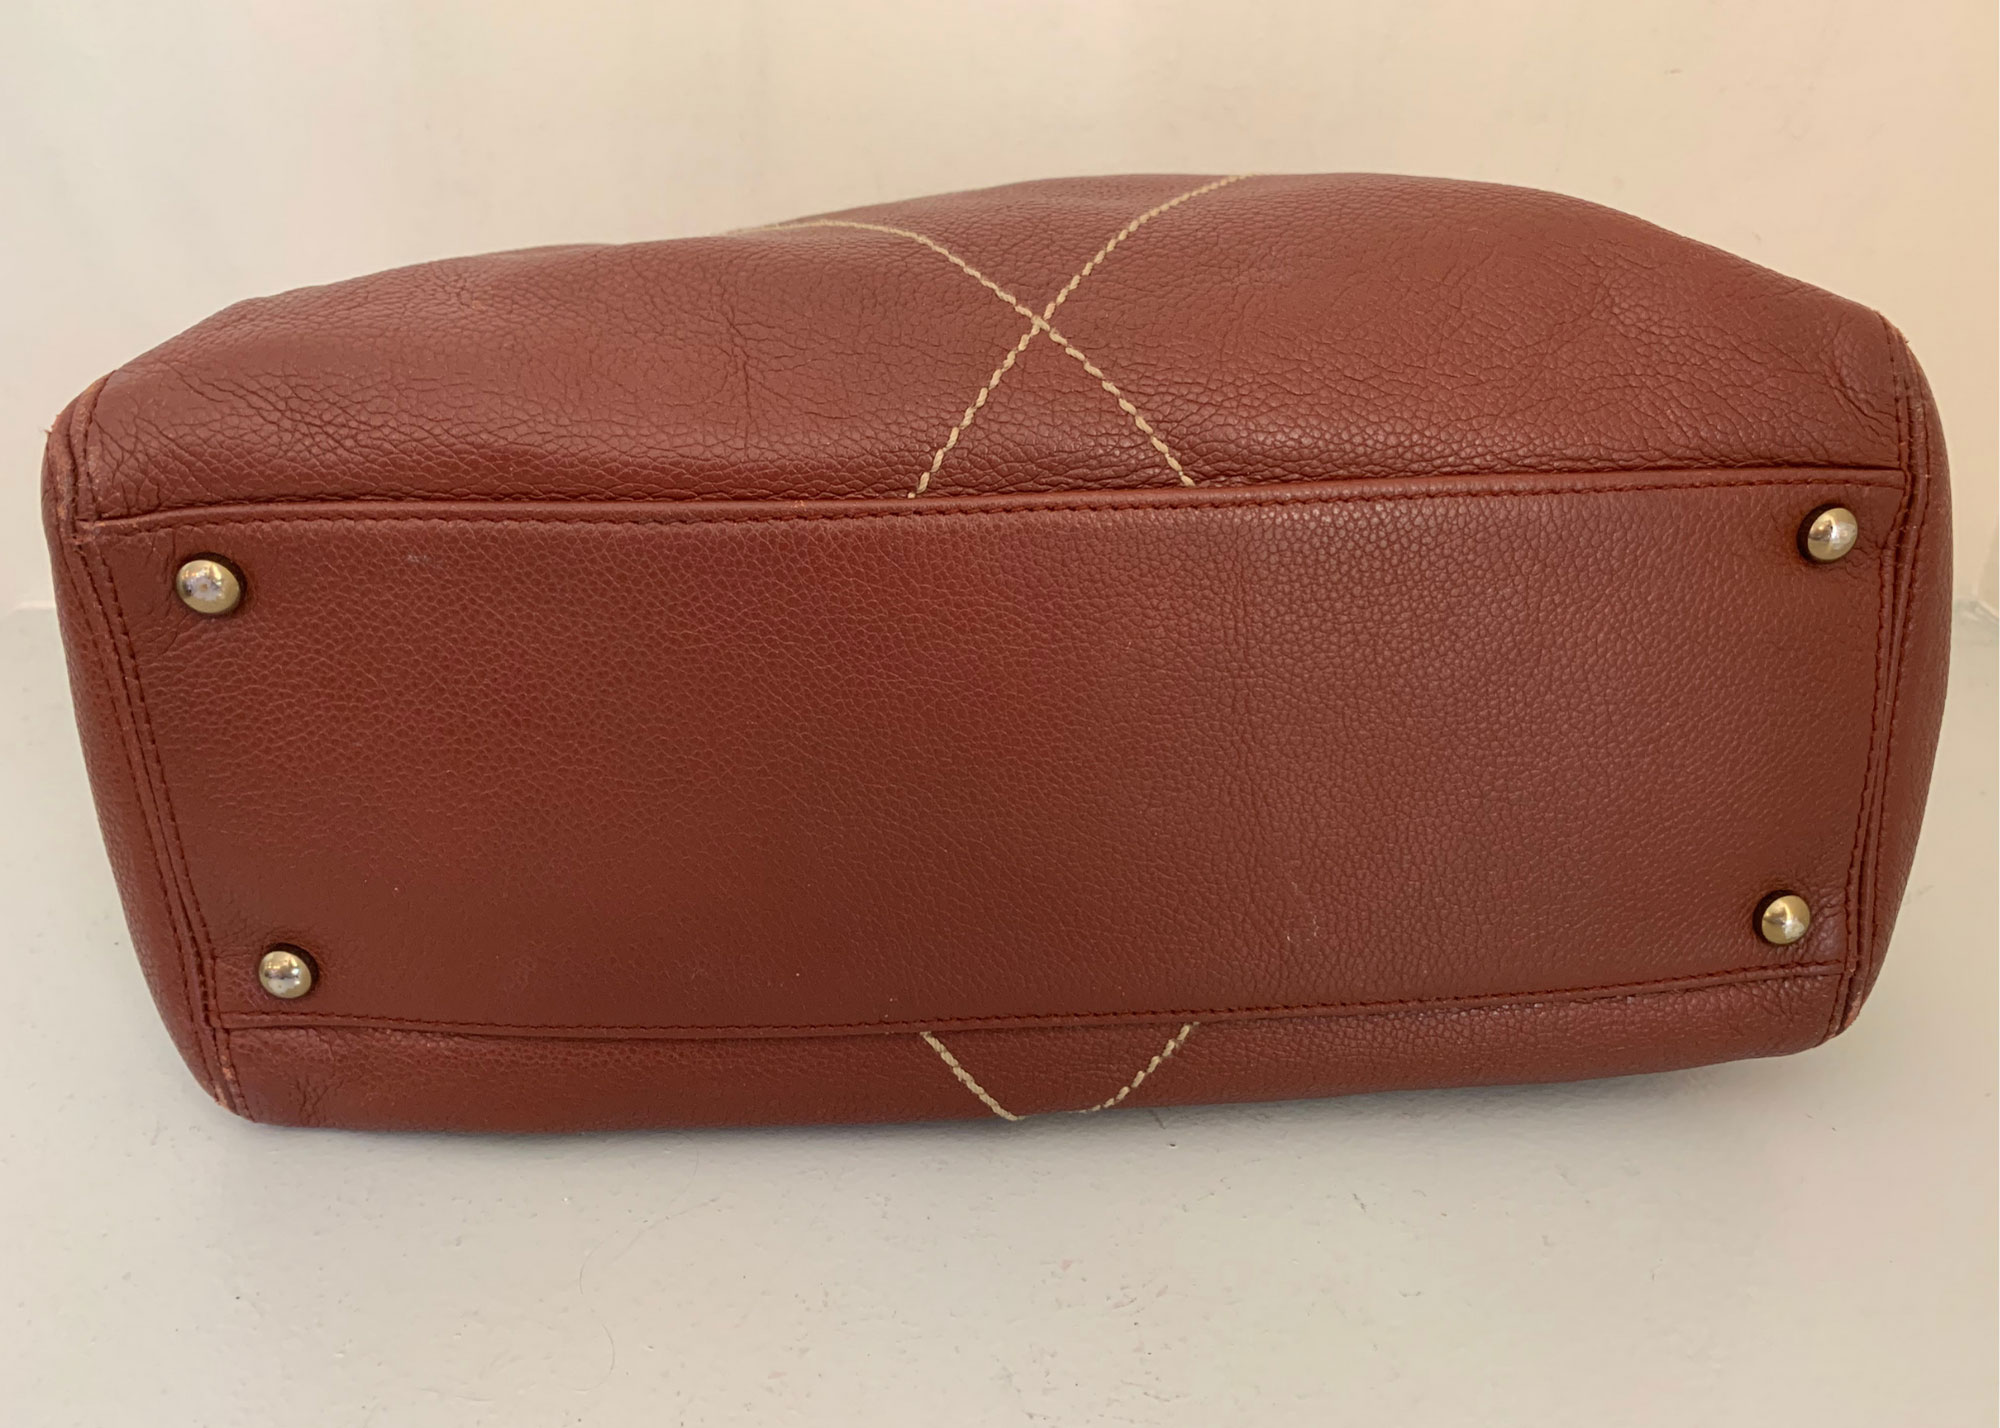 Chanel Leather Hobo Handbag